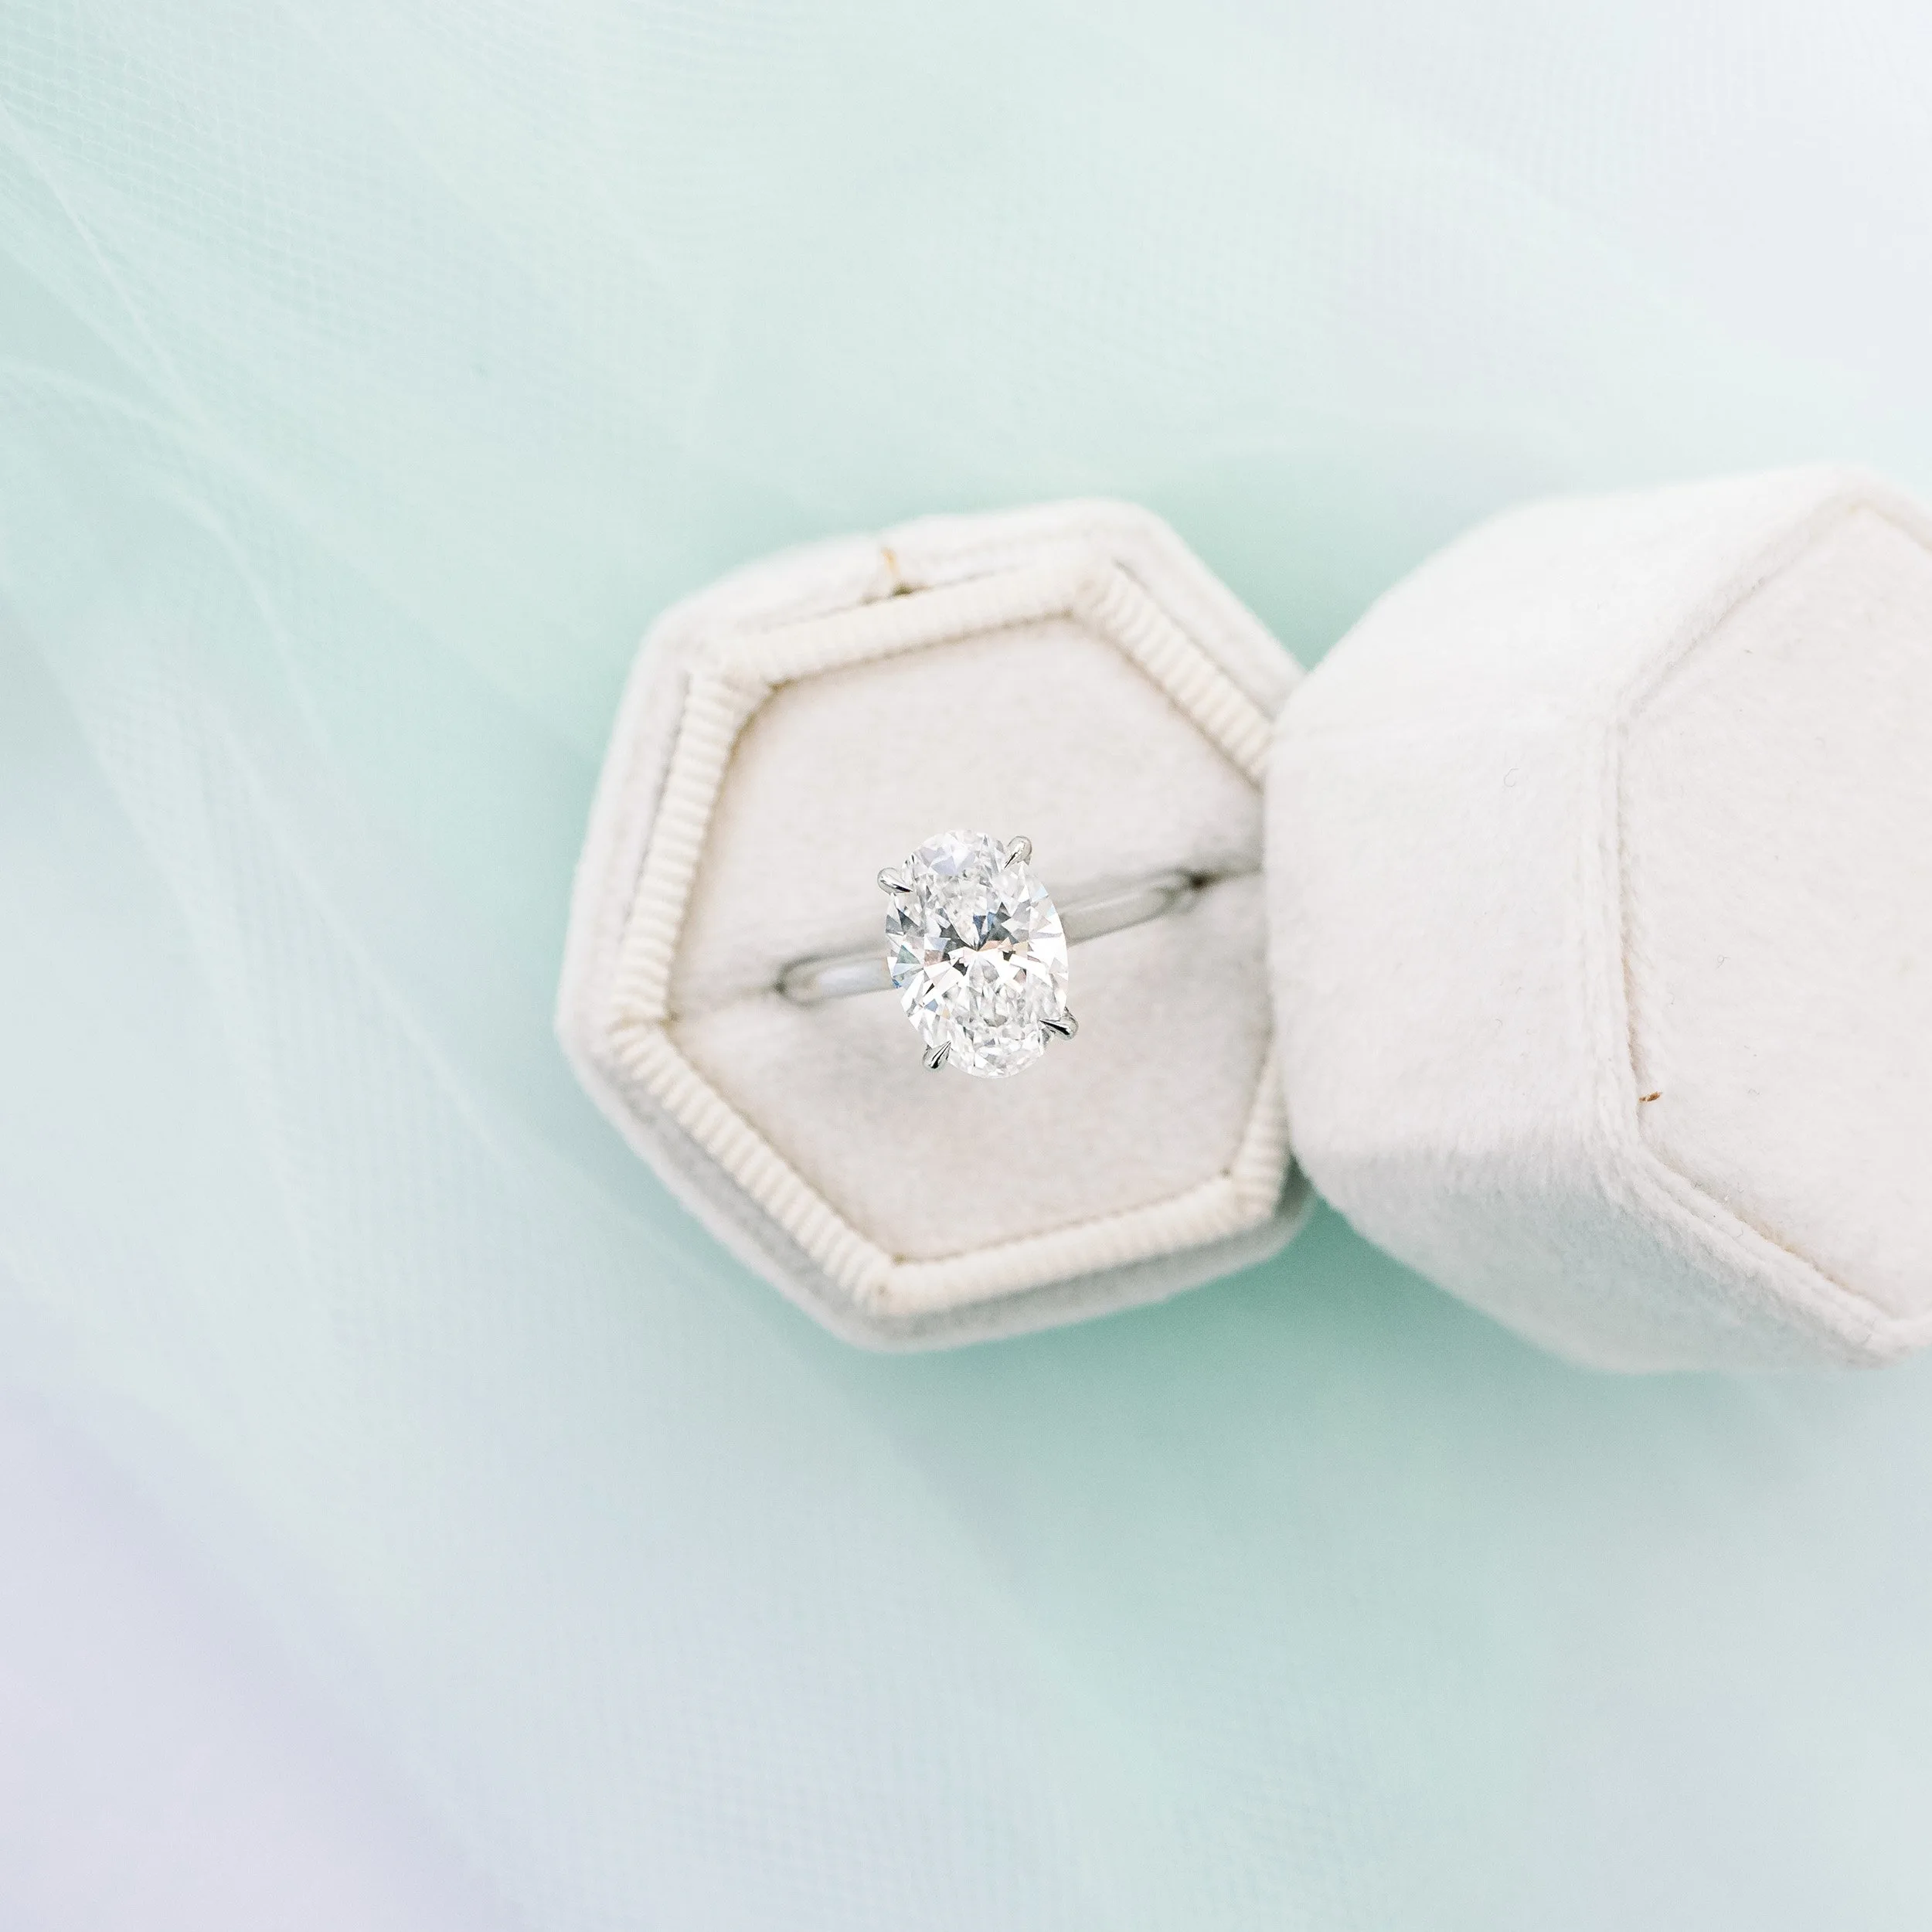 platinum 2.5 carat oval trellis solitaire engagement ring ada diamonds design ad 328 macro